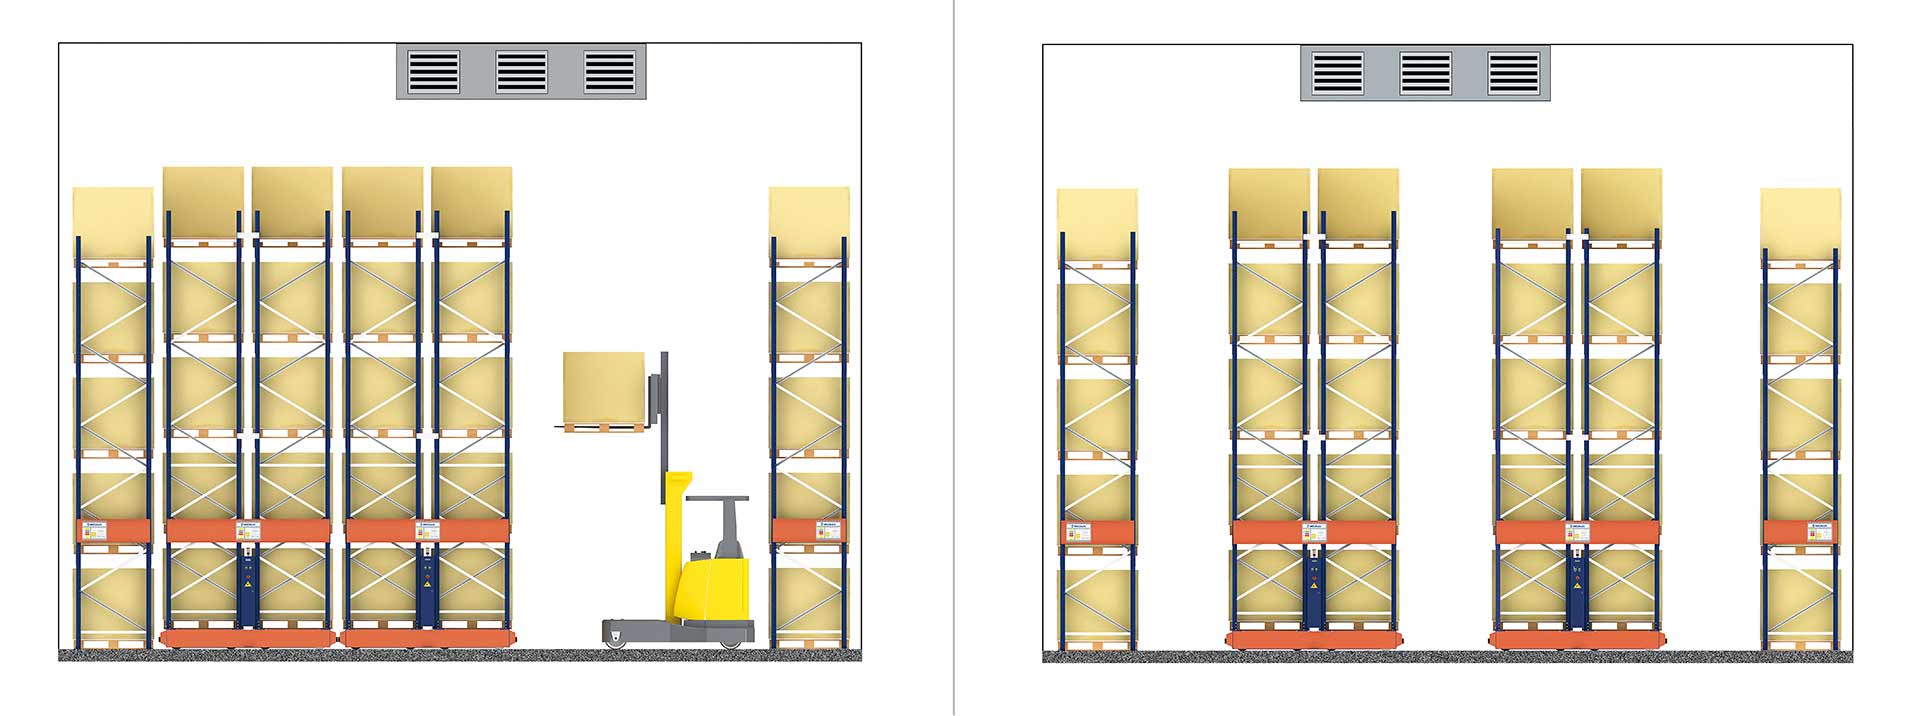 A opção de estacionamento permite aumentar a separação entre estantes facilitando uma melhor circulação do ar